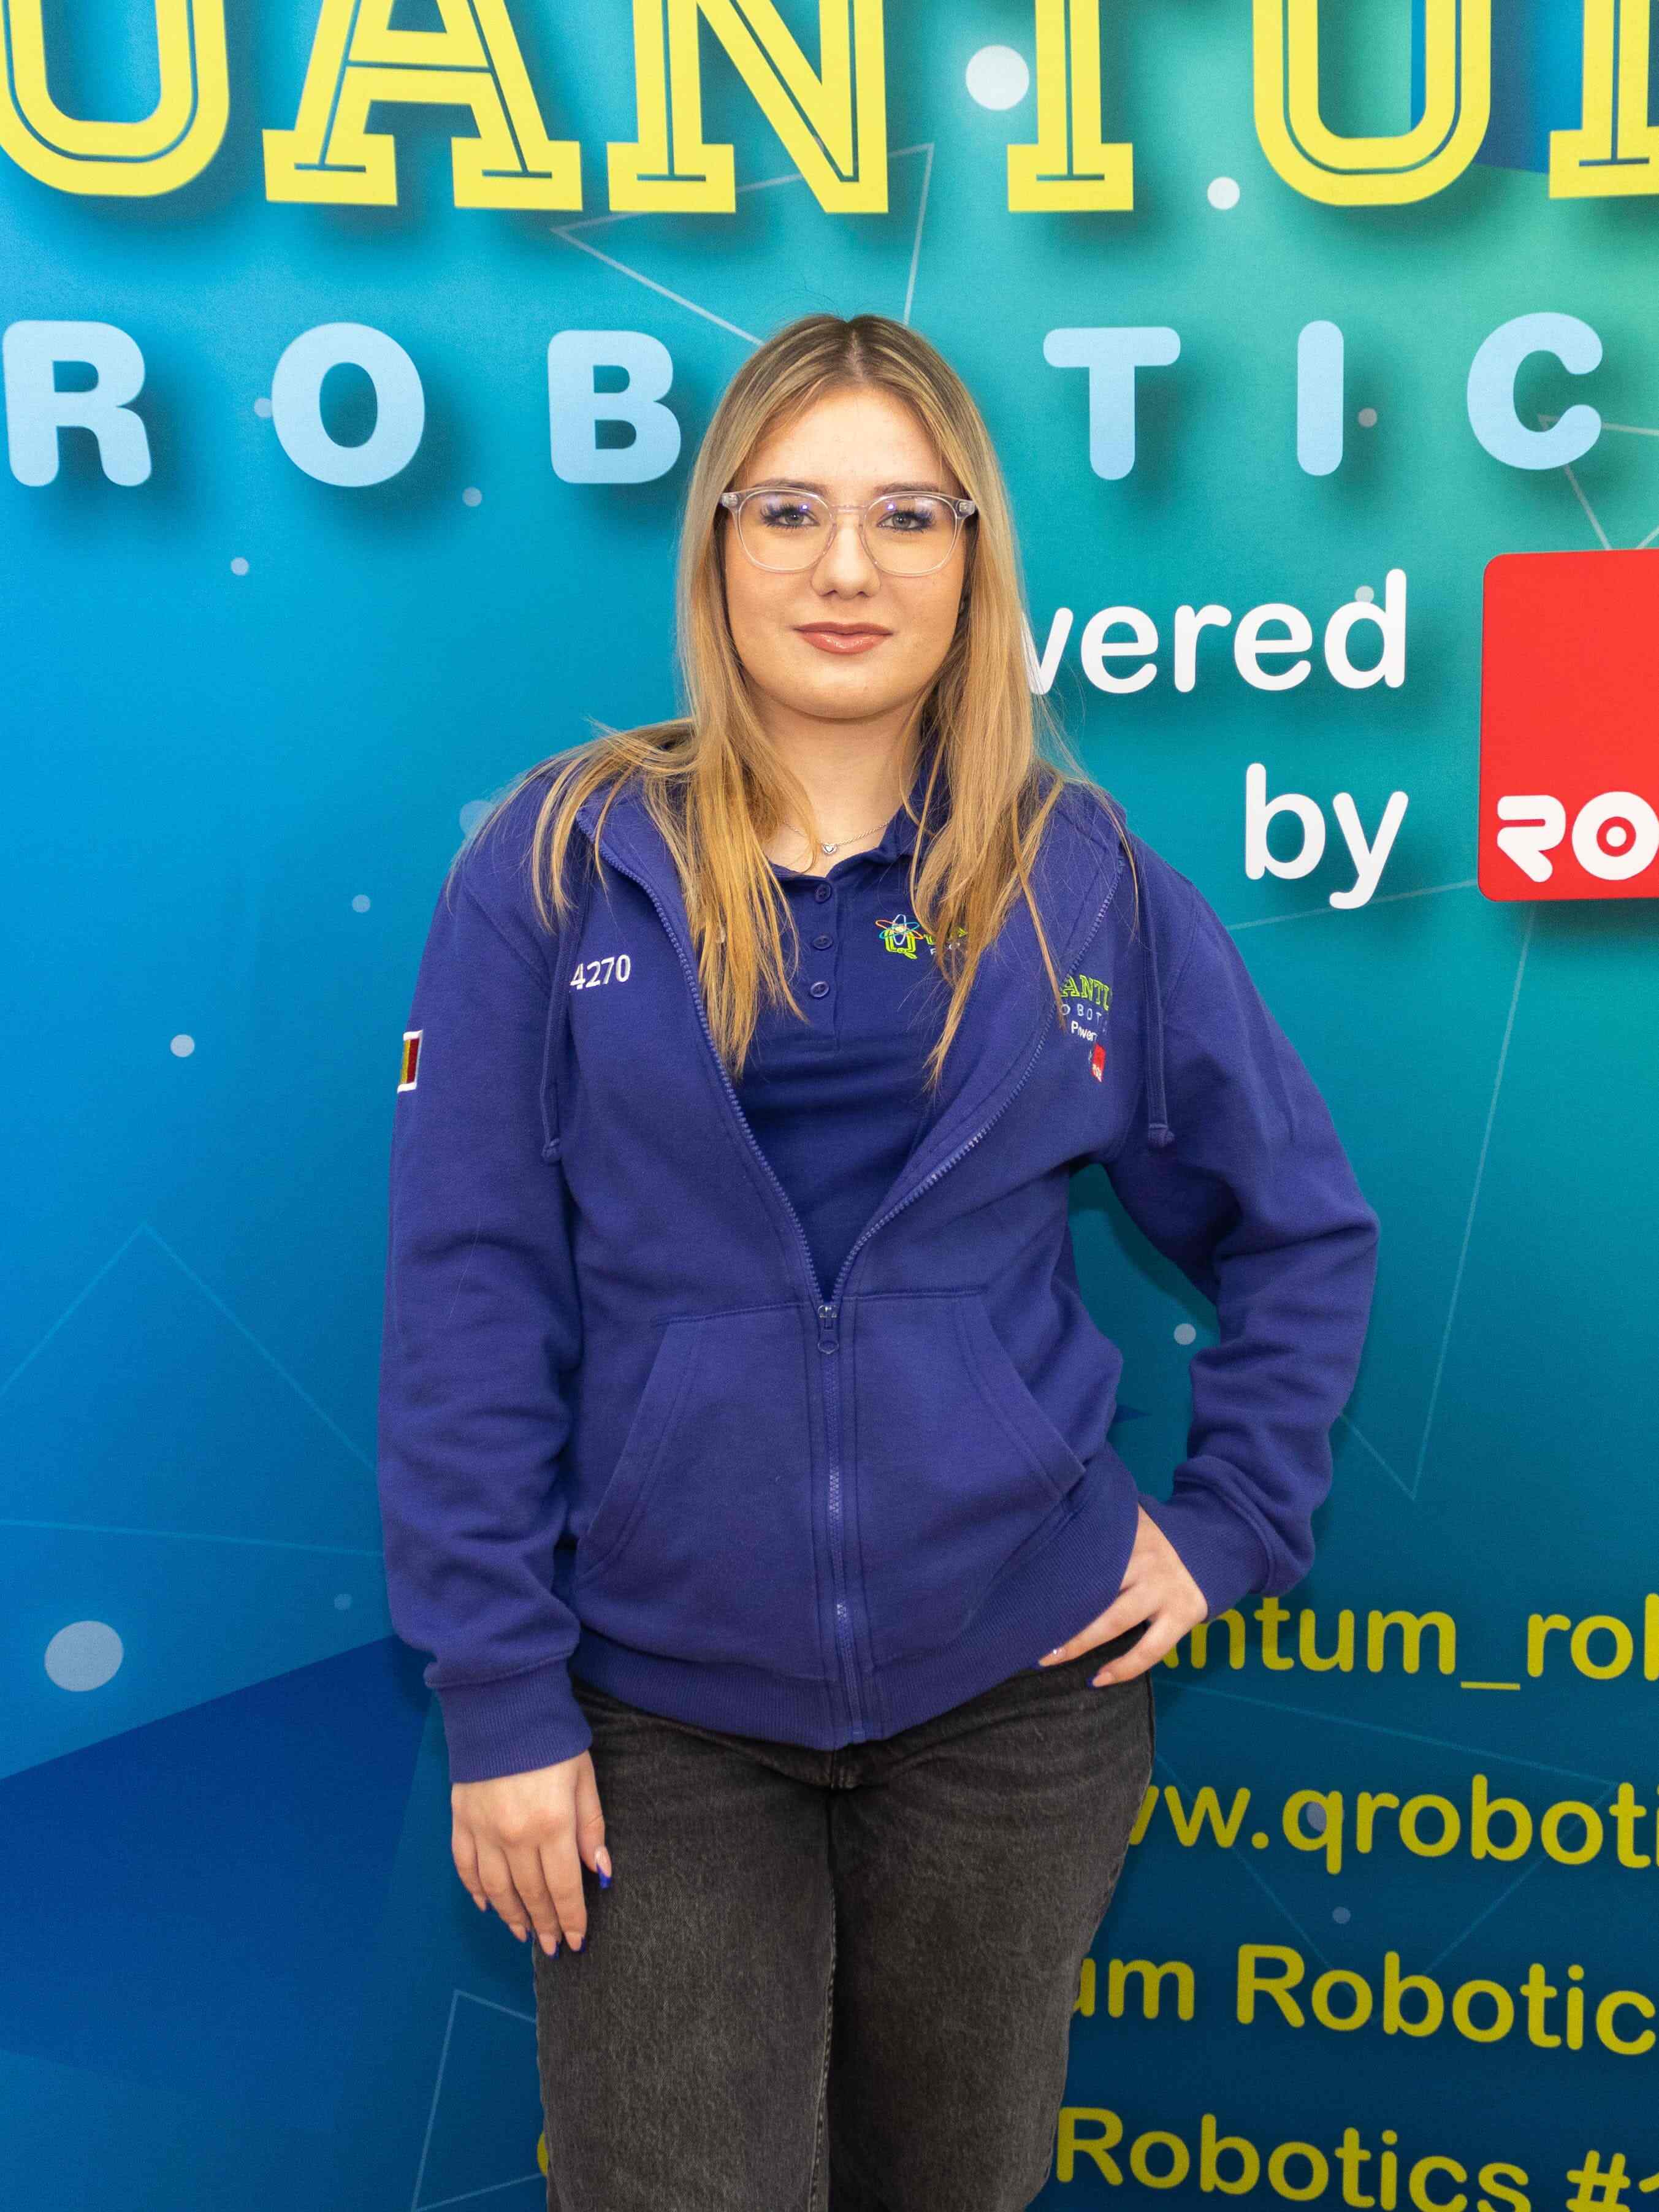 Quantum-Robotics-FTC-FIRST-competiton-team-members-Maria-Dan